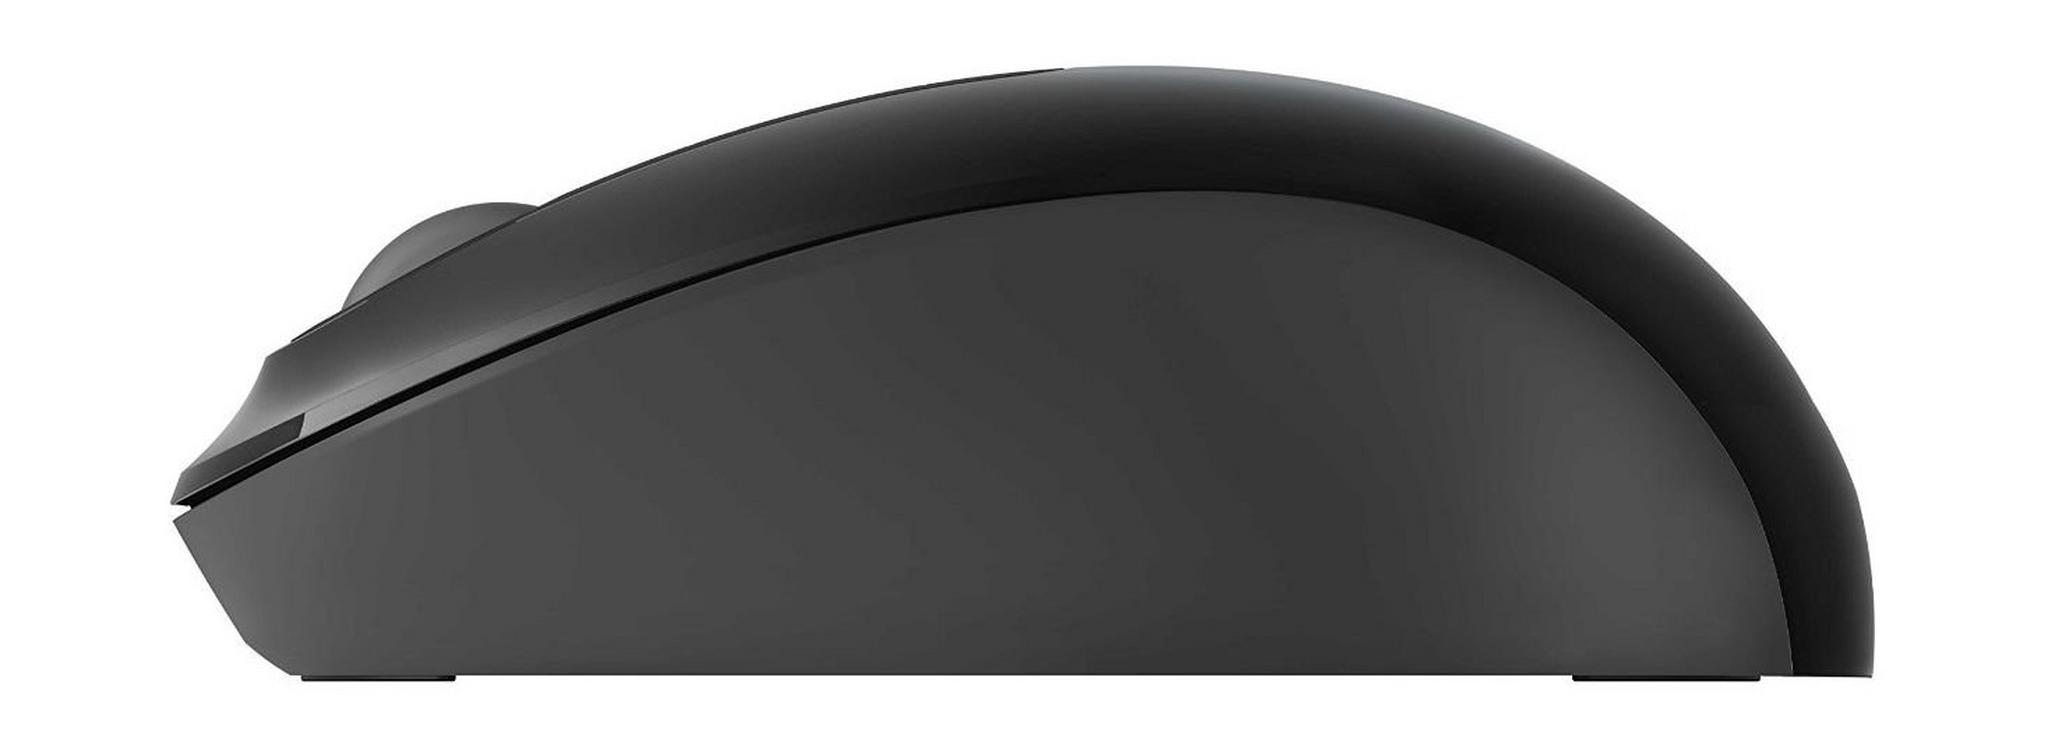 Microsoft Wireless Mouse 900 (PW4-00004) - Black